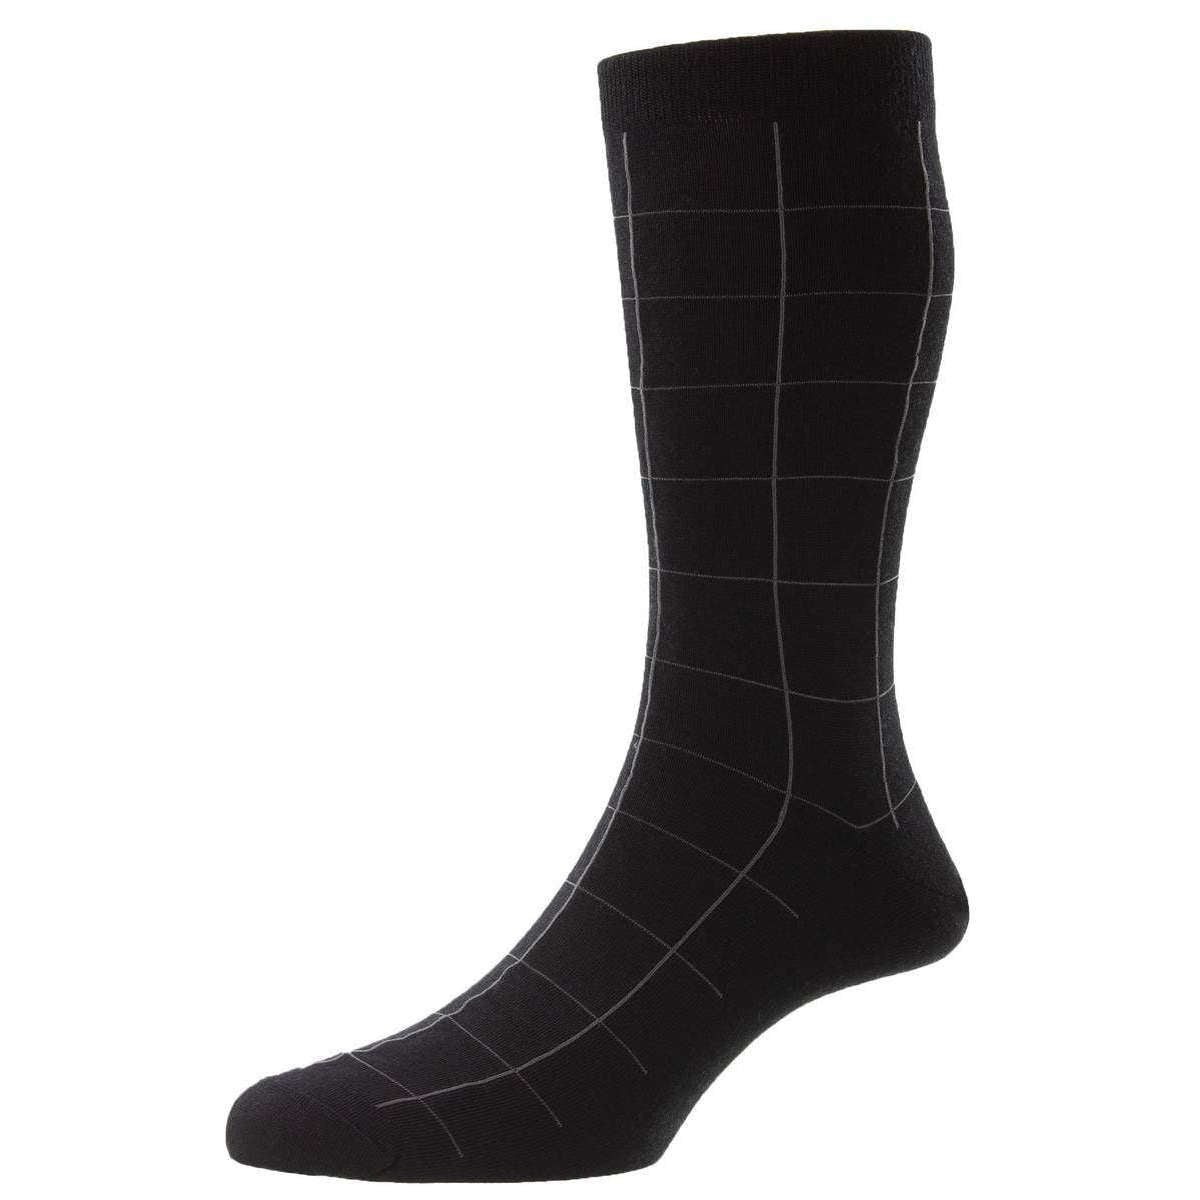 Pantherella Westleigh Merino Wool Socks - Black